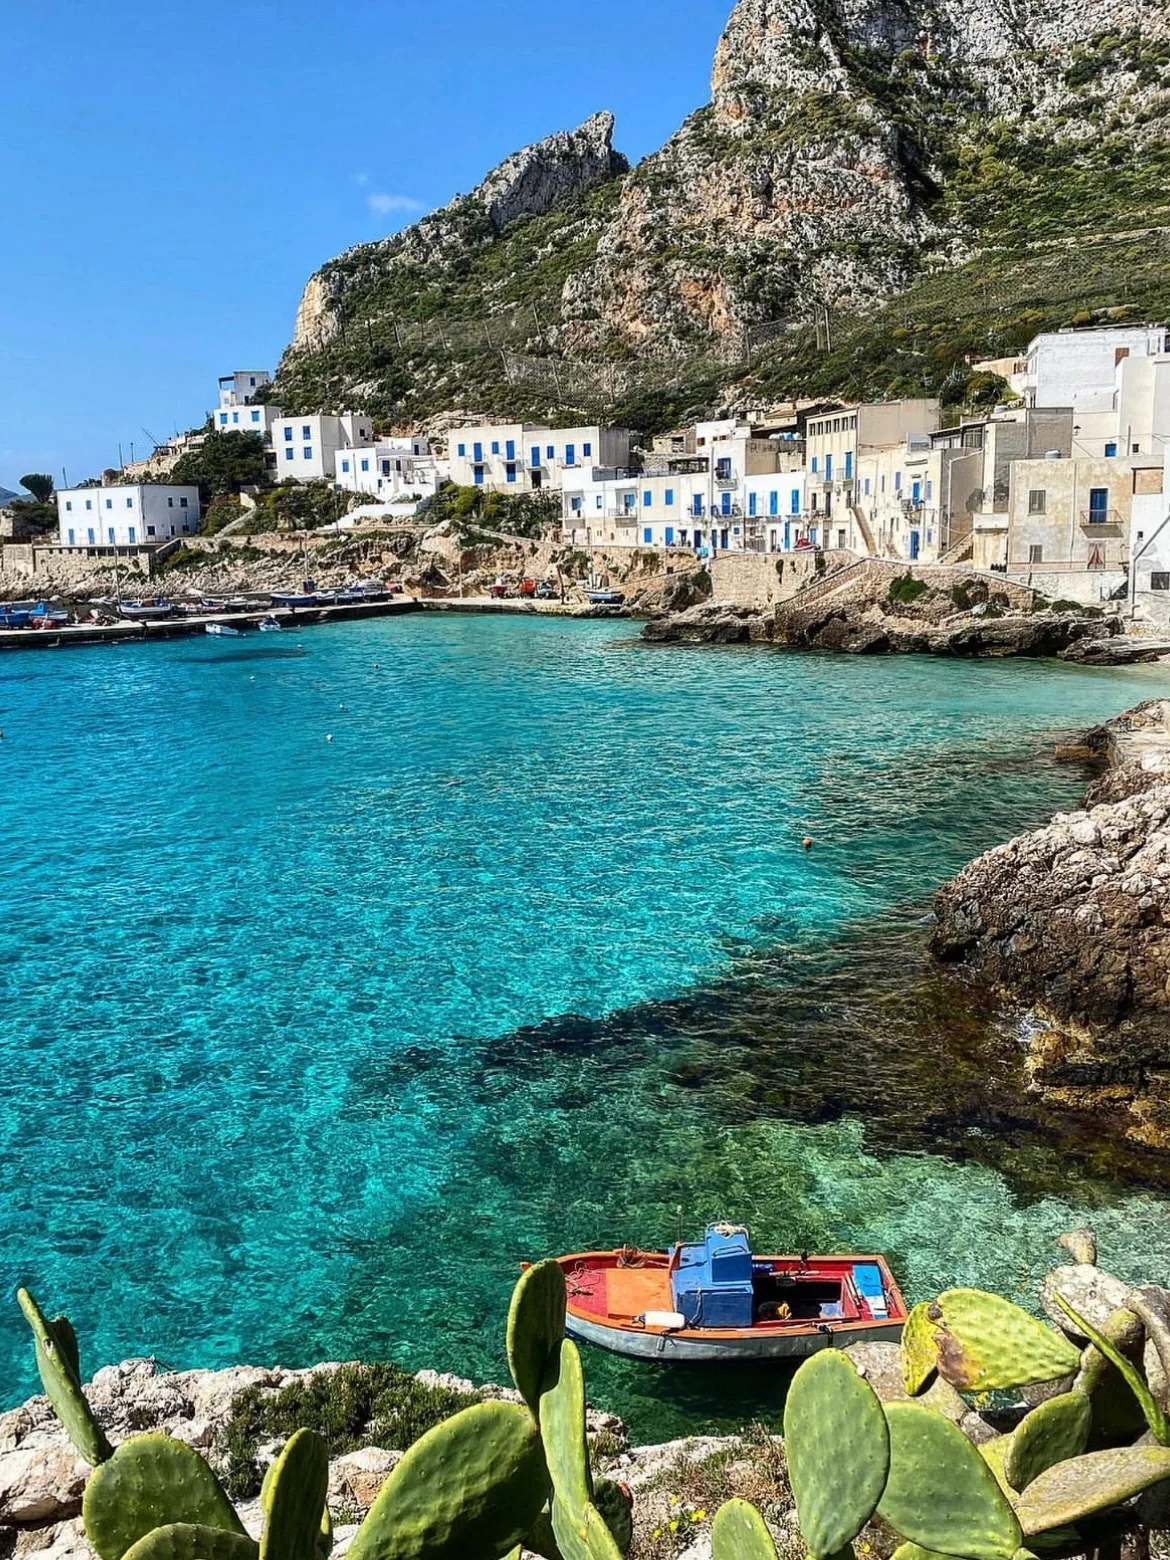 #我的科幻旅行大片  意大利的浪漫藏在这15个岛屿里 1.Capri 卡普里岛 2. Levanzo